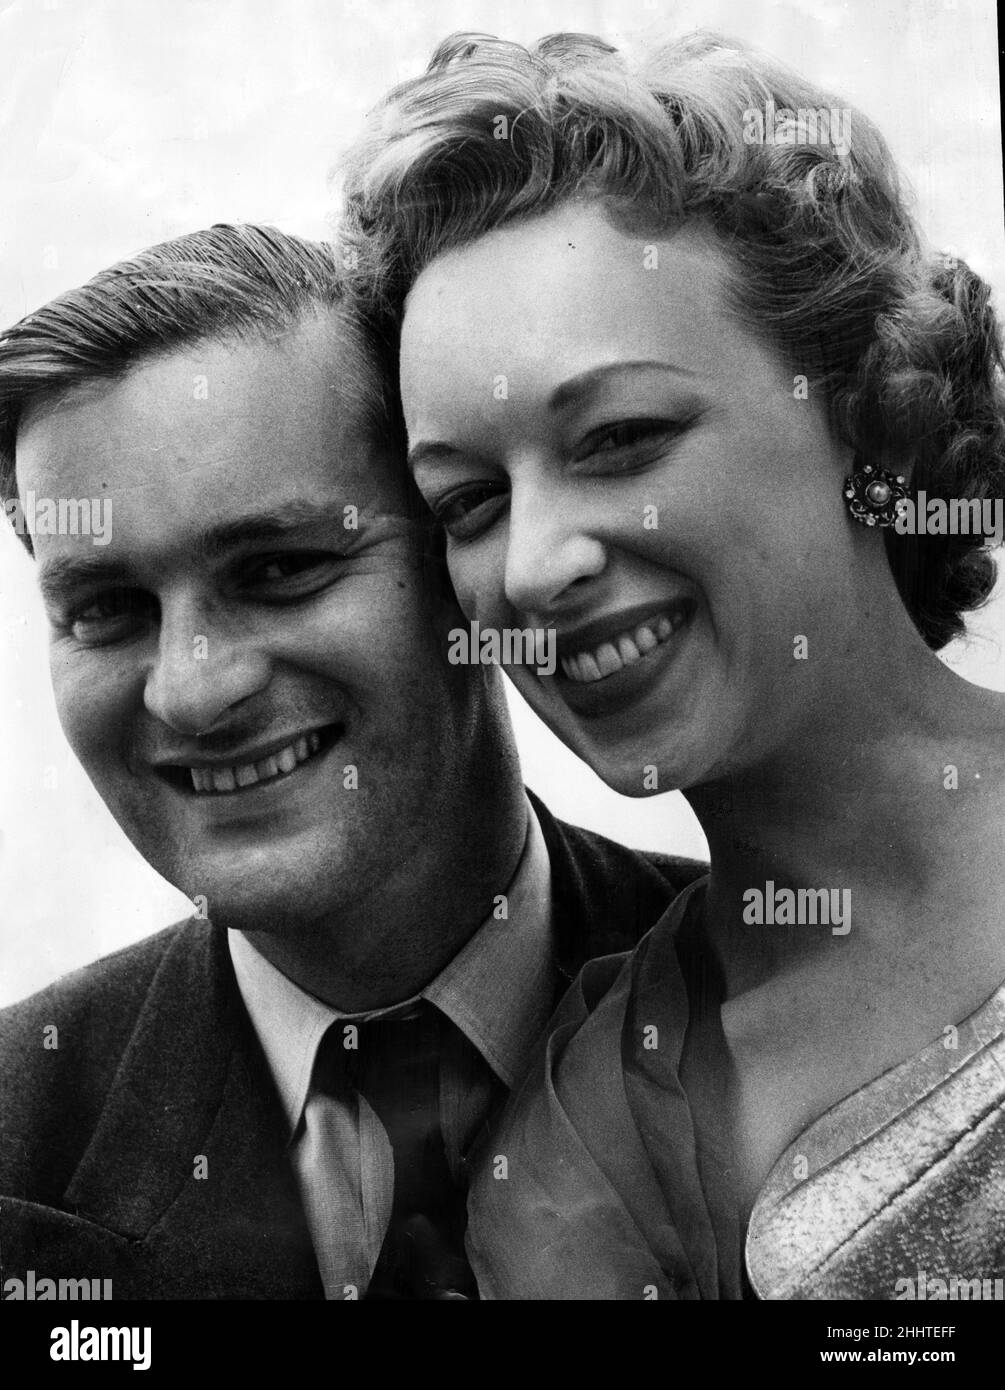 June Whitfield und ihr Verlobter Tim Aitchison Vollständiger Name Timothy Aitchison Bild aufgenommen am 9th. August 1955 June Whitfield ist eine bekannte englische Fernseh- und Bühnenschauspielerin Stockfoto